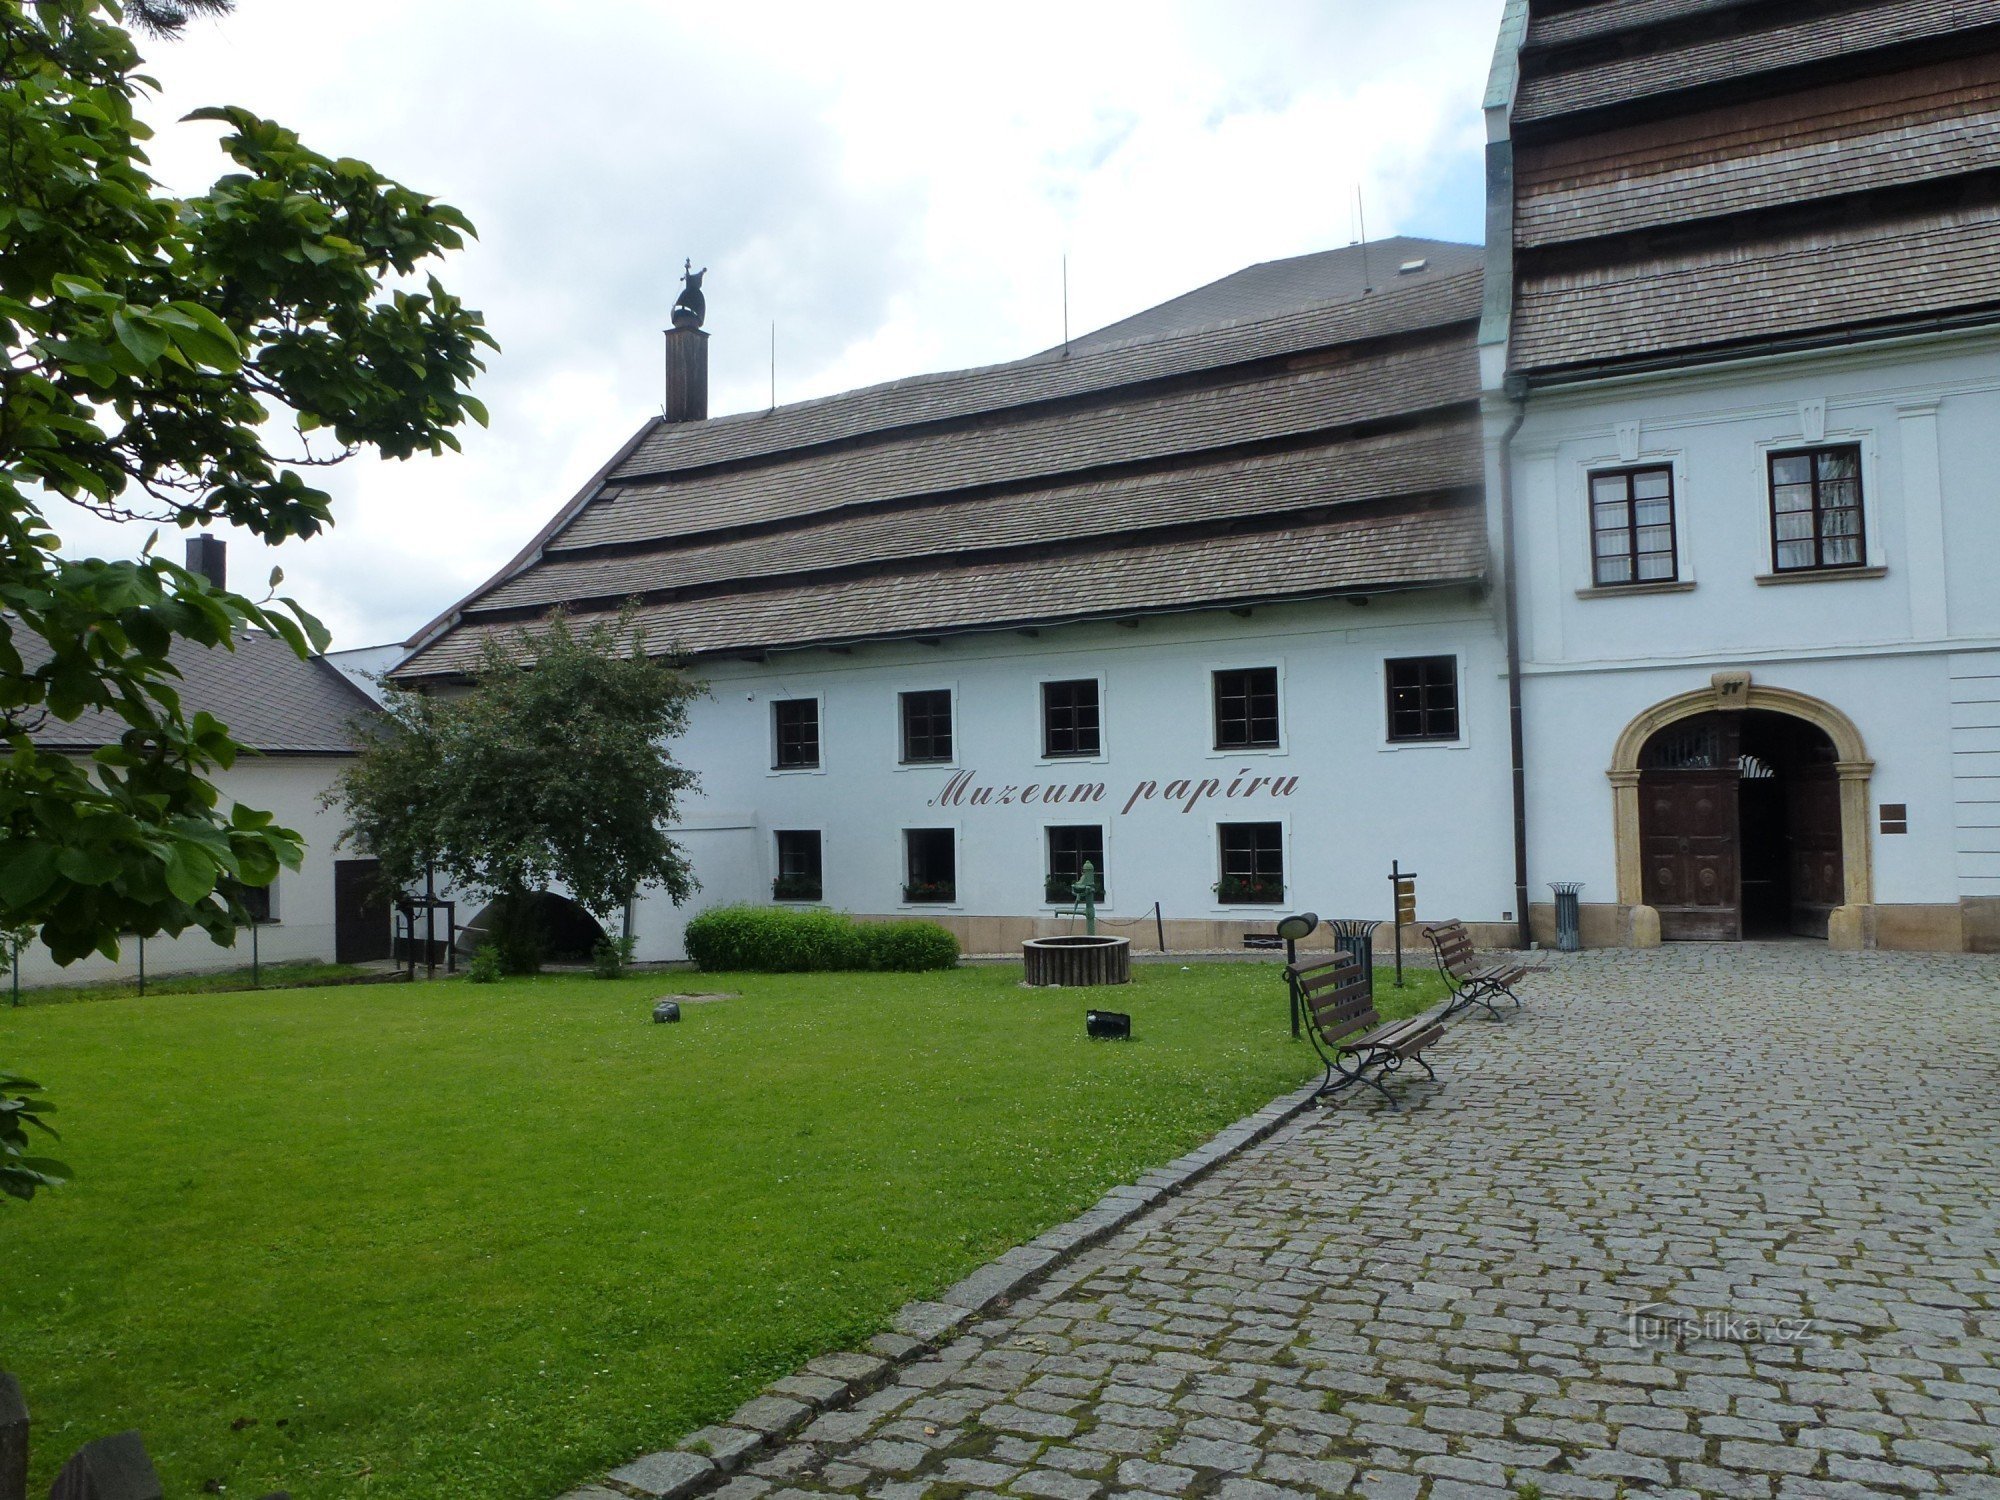 De unieke papierfabriek overleefde ook de heksenprocessen van Velká Losina